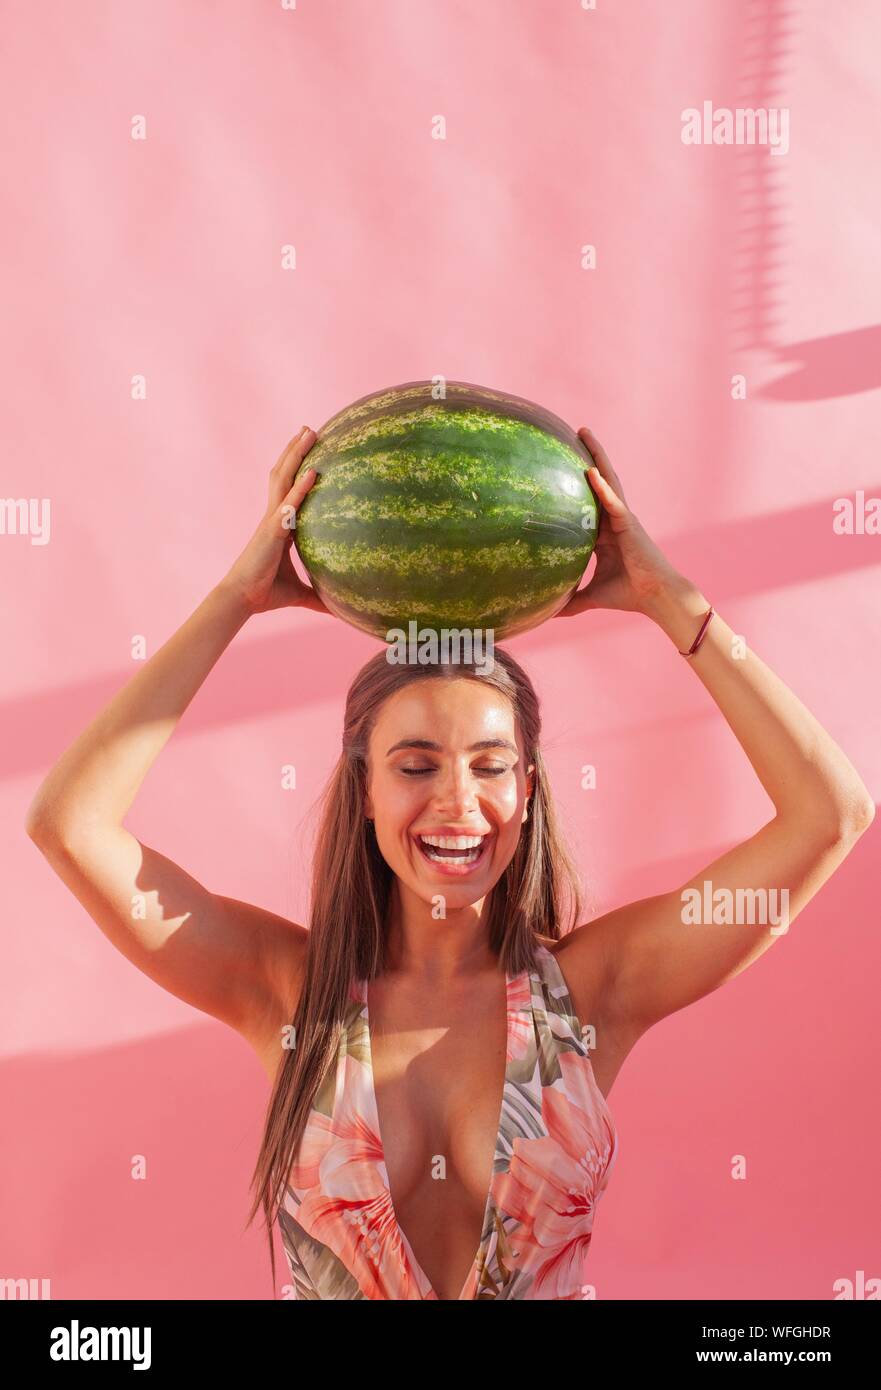 Lächelnde Frau mit einem Wassermelone über ihrem Kopf Stockfoto